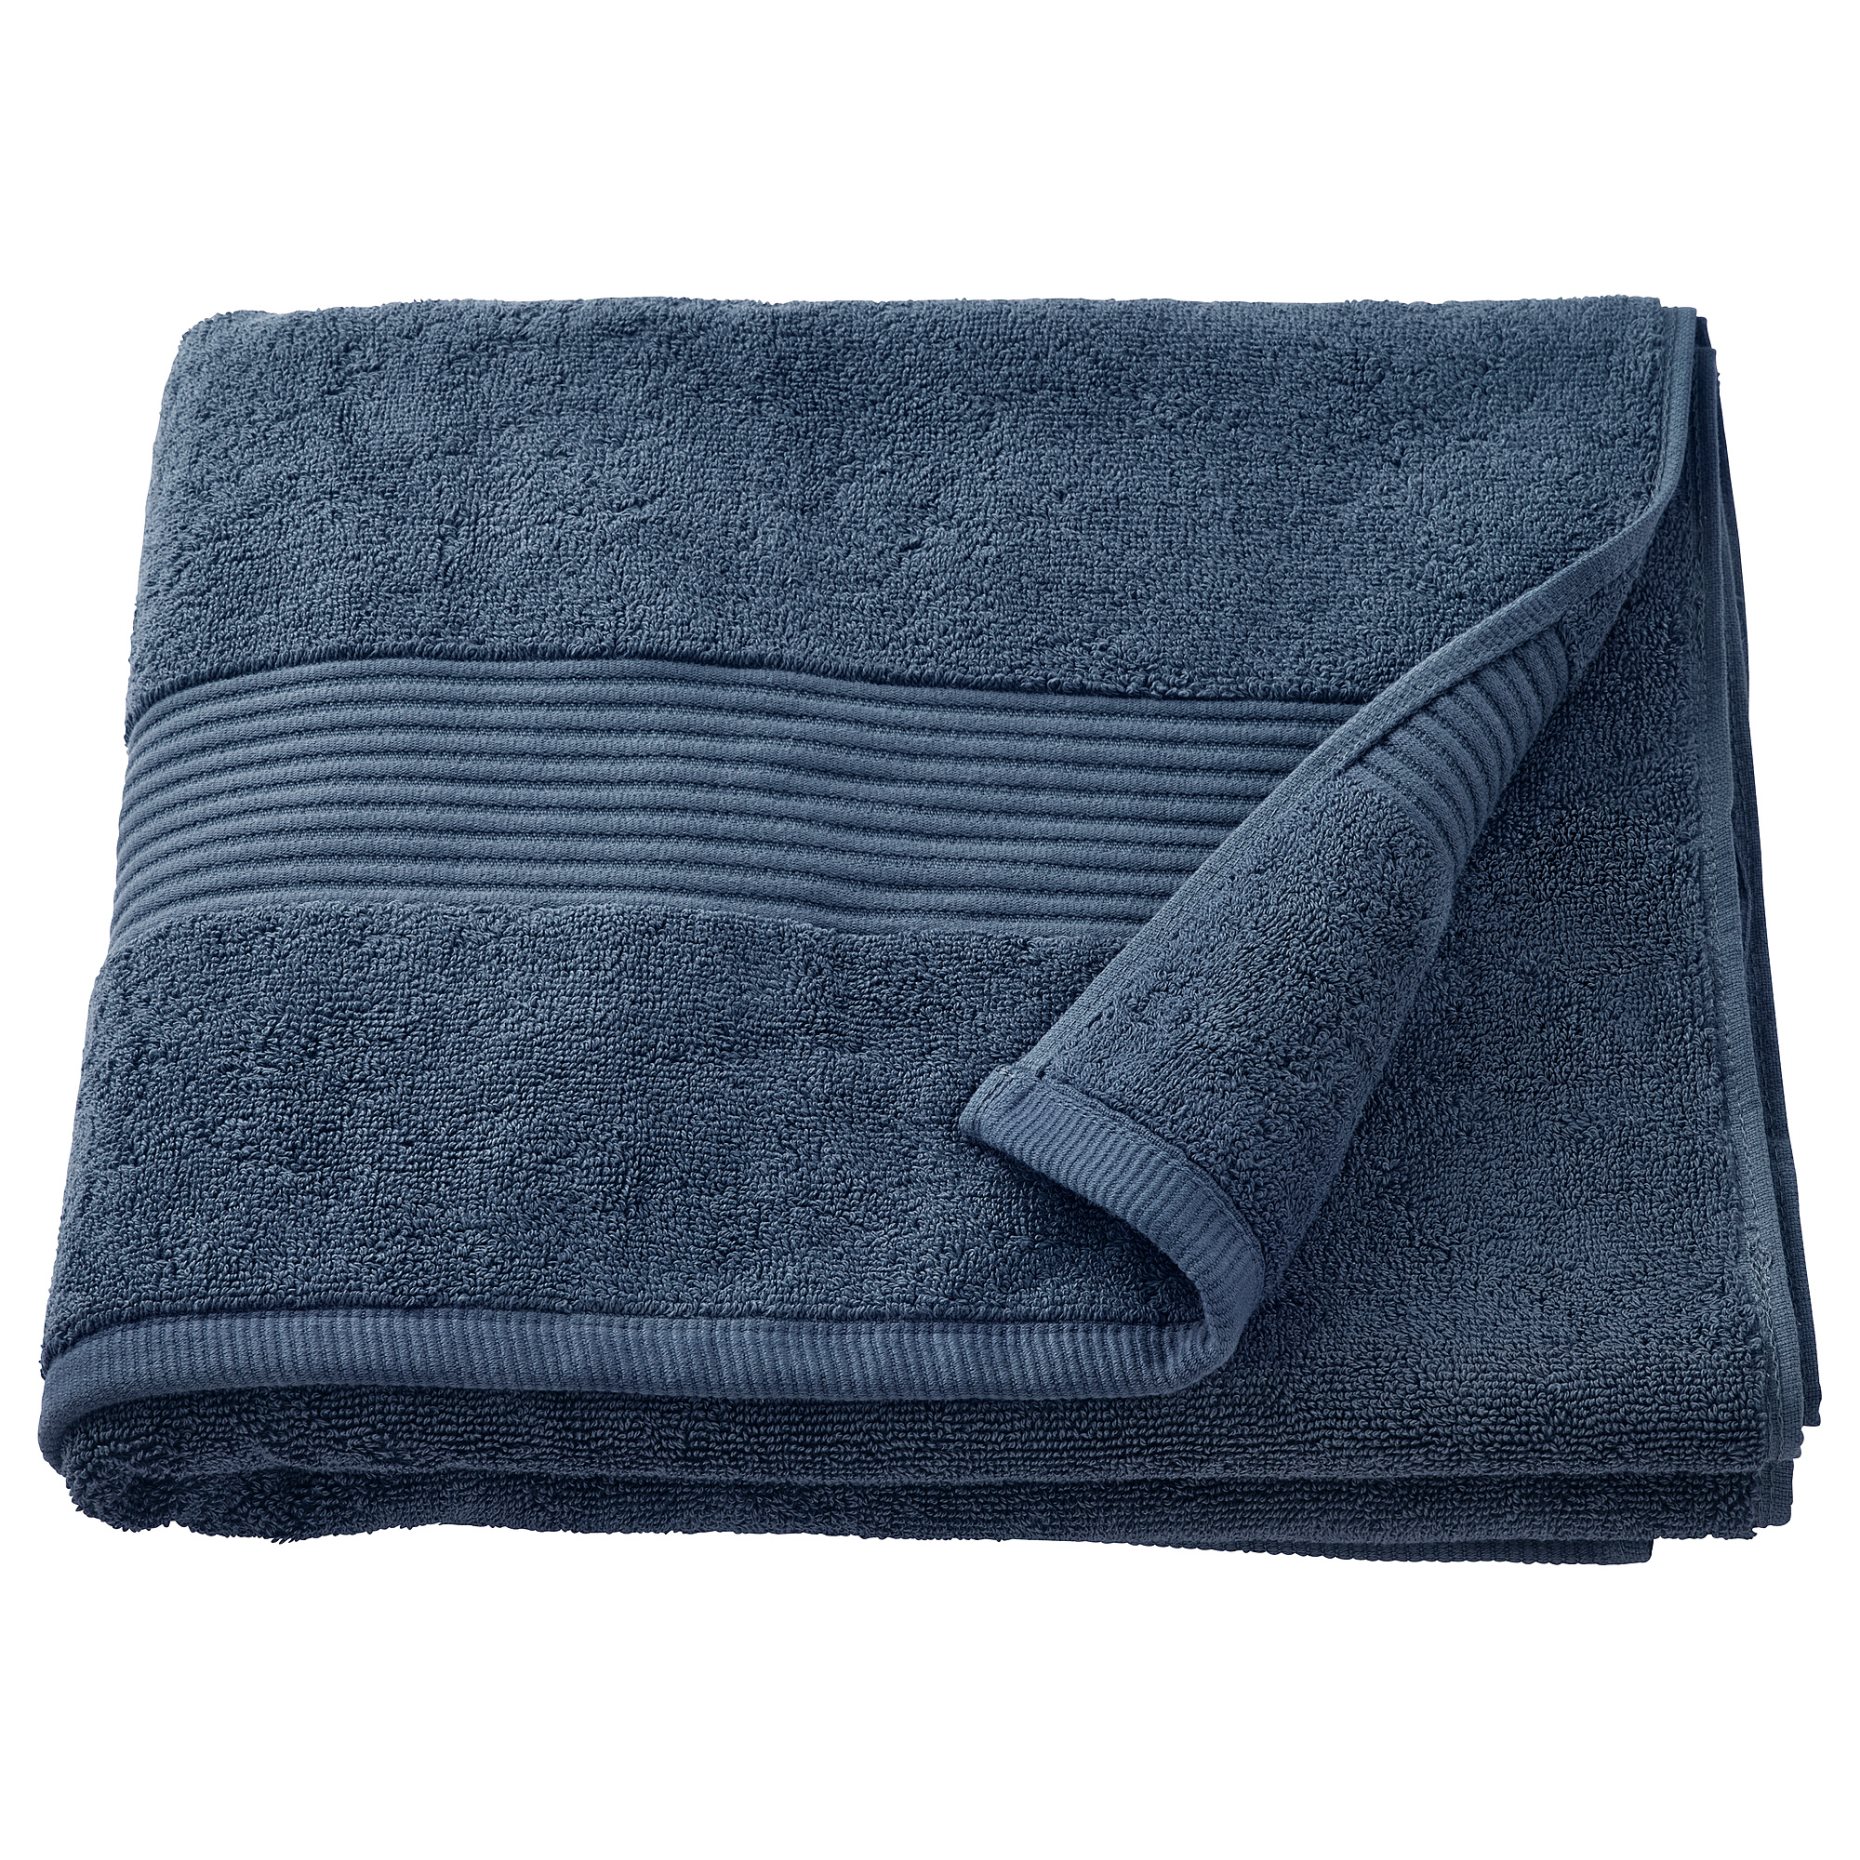 FREDRIKSJON, bath towel, 70x140 cm, 104.966.70